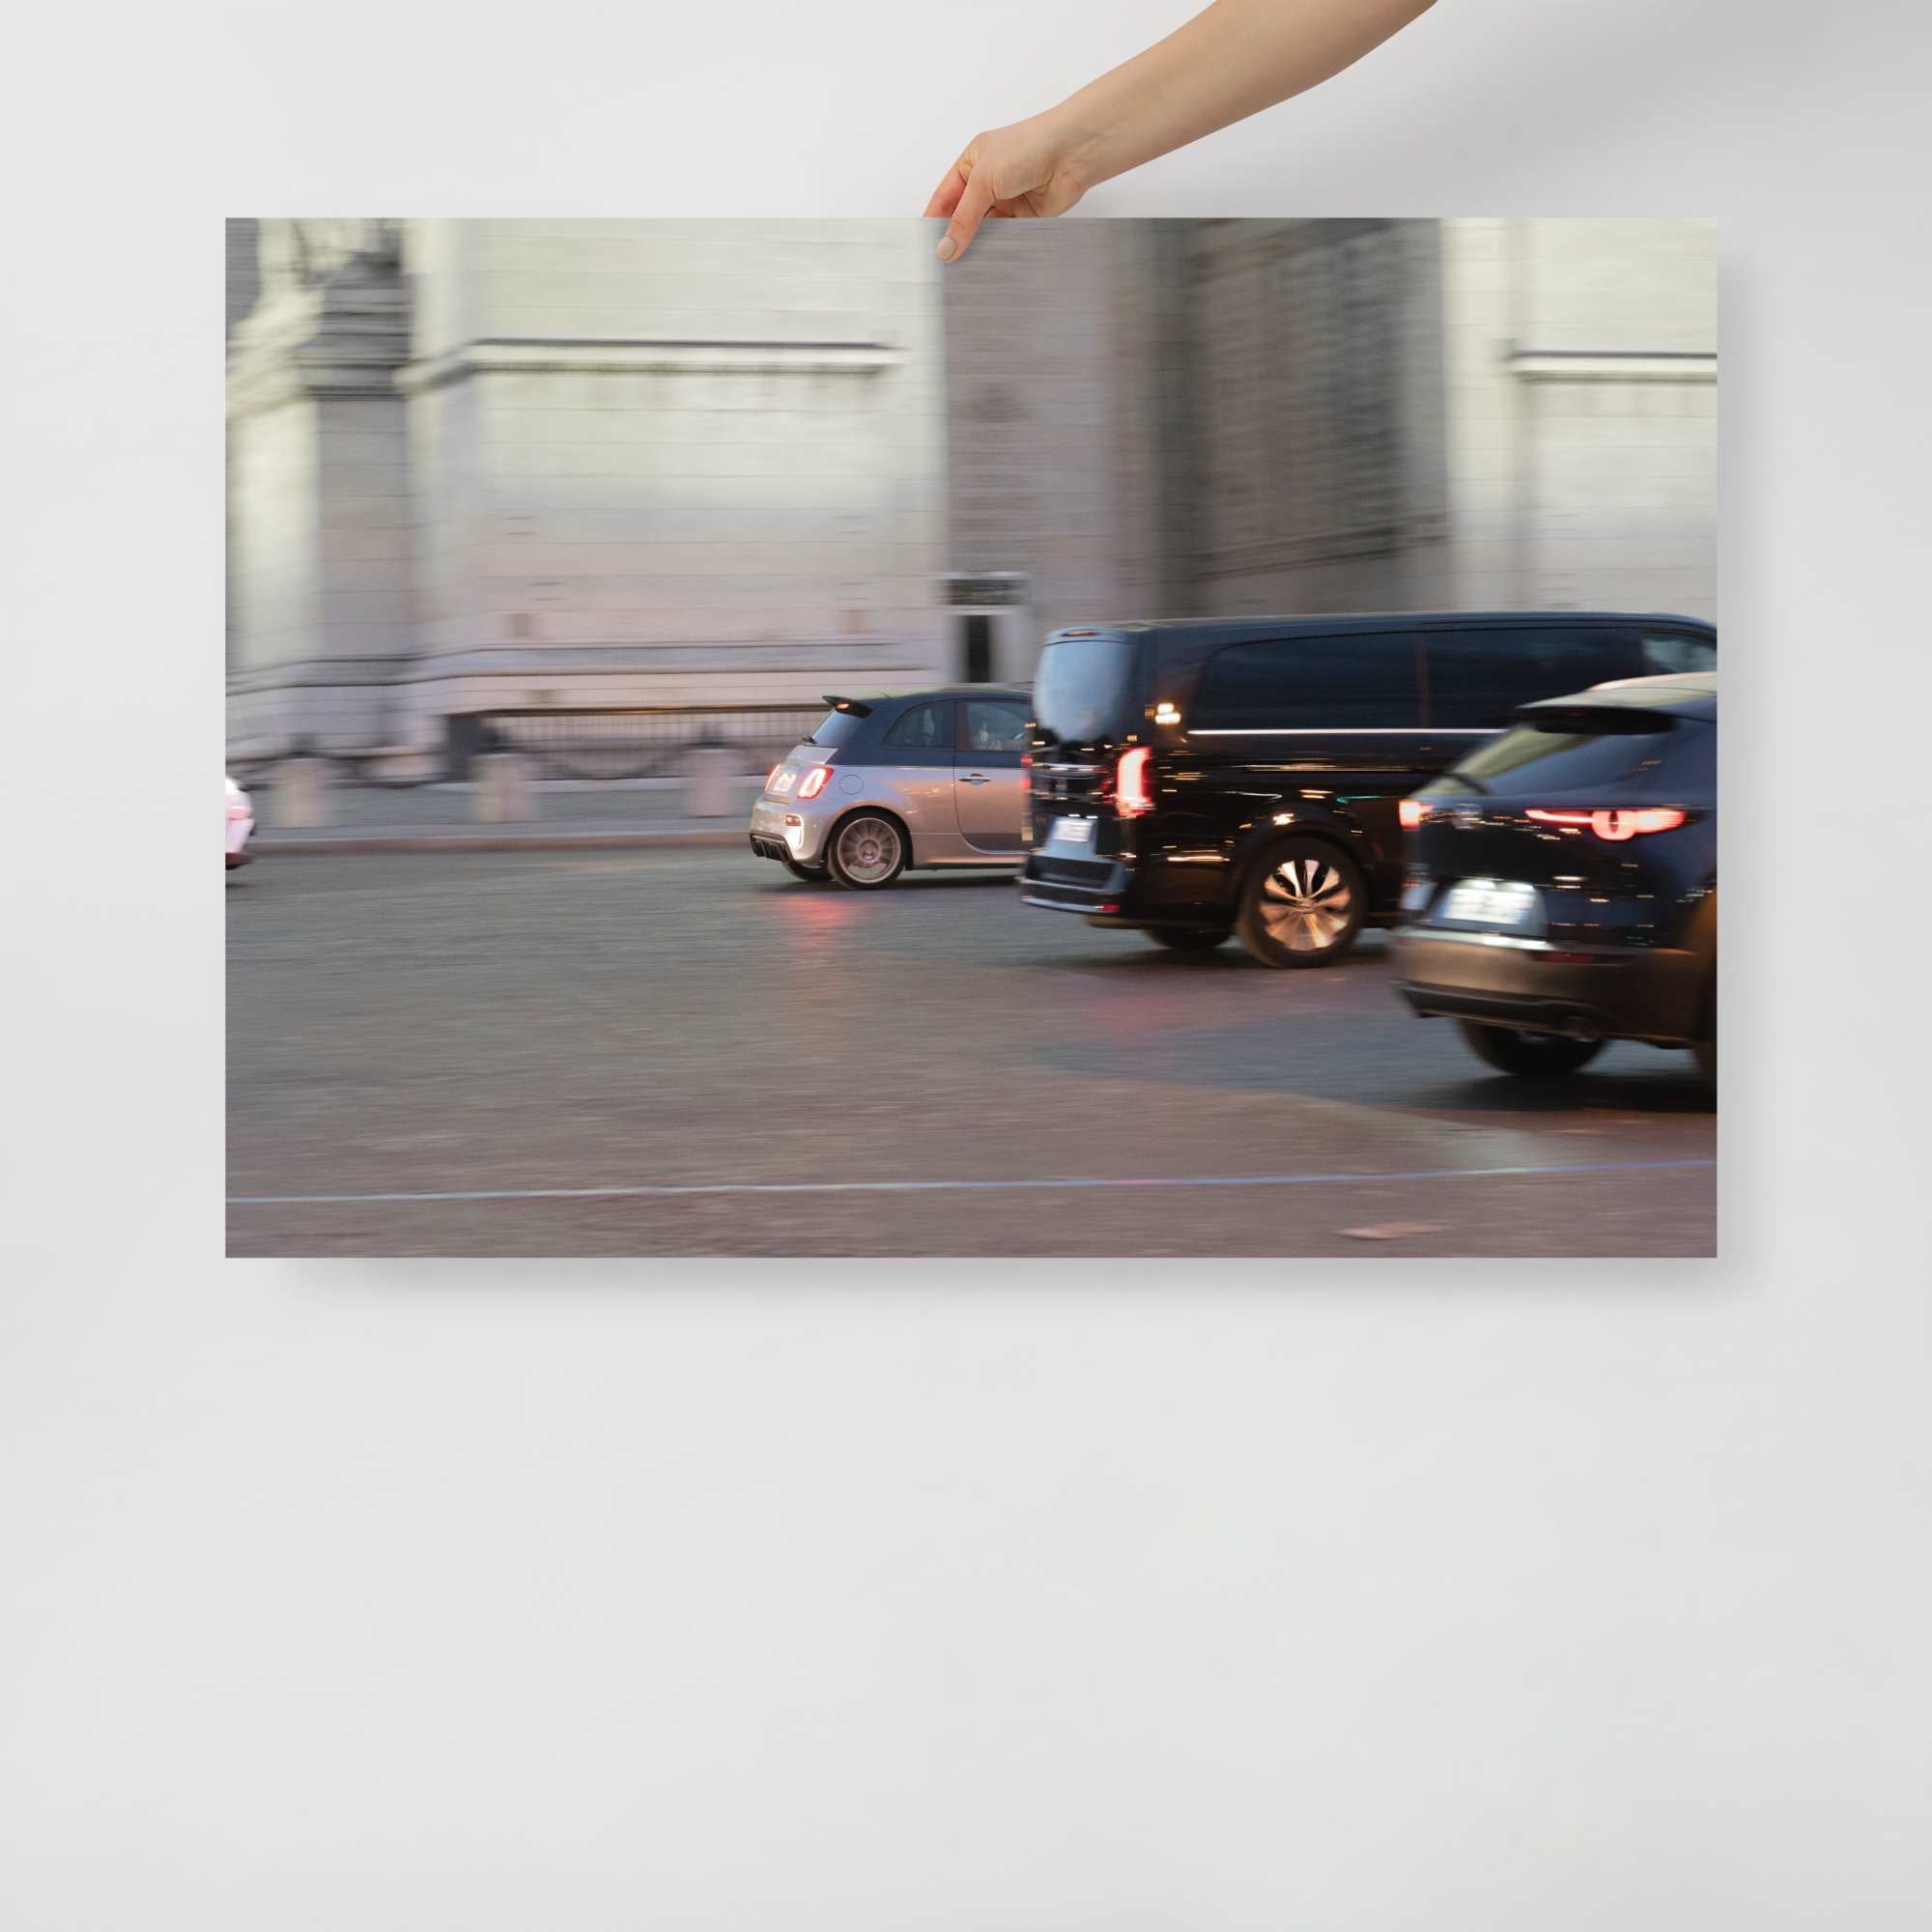 Poster mural - Fiat 500 Abarth – Photographie de voiture – Poster photo, poster XXL, Photo d’art, photographie murale et des posters muraux des photographies de rue unique au monde. La boutique de posters créée par un Photographe français.